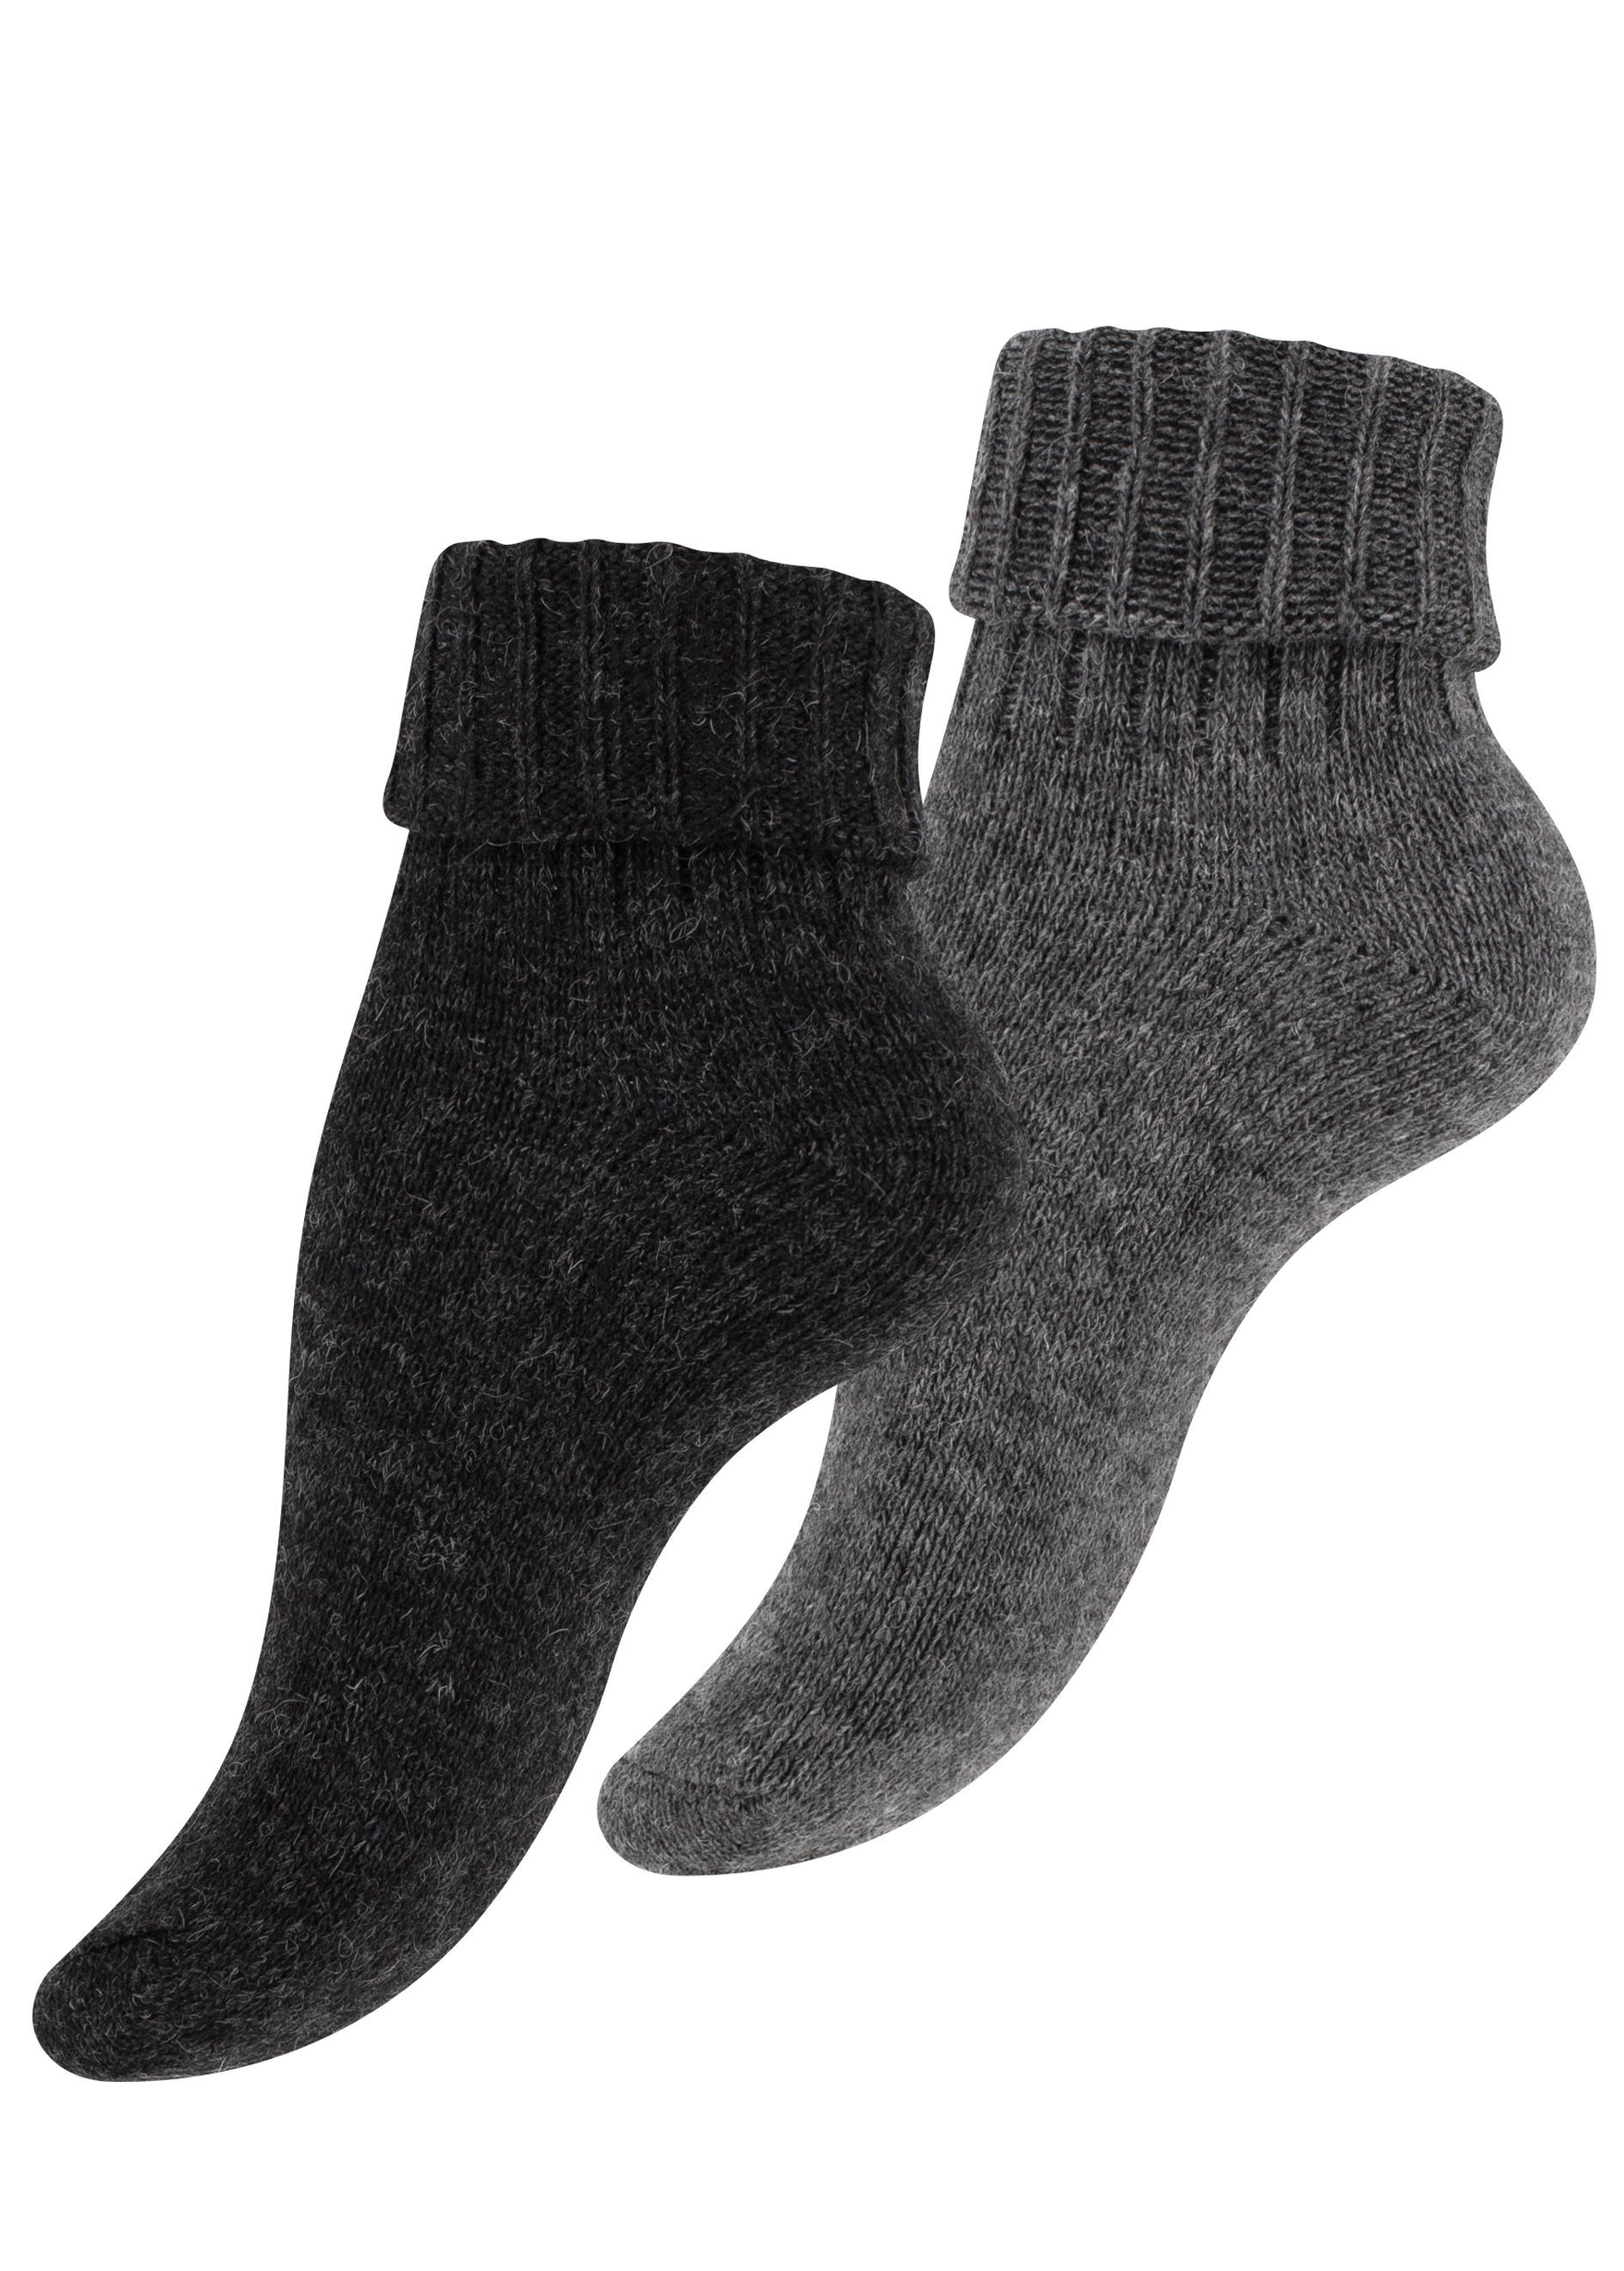 Cotton Prime® Socken Alpaka Socken mit Umschlag (2-Paar) ökologisch gefärbt und vorgewaschen anthrazit/grau